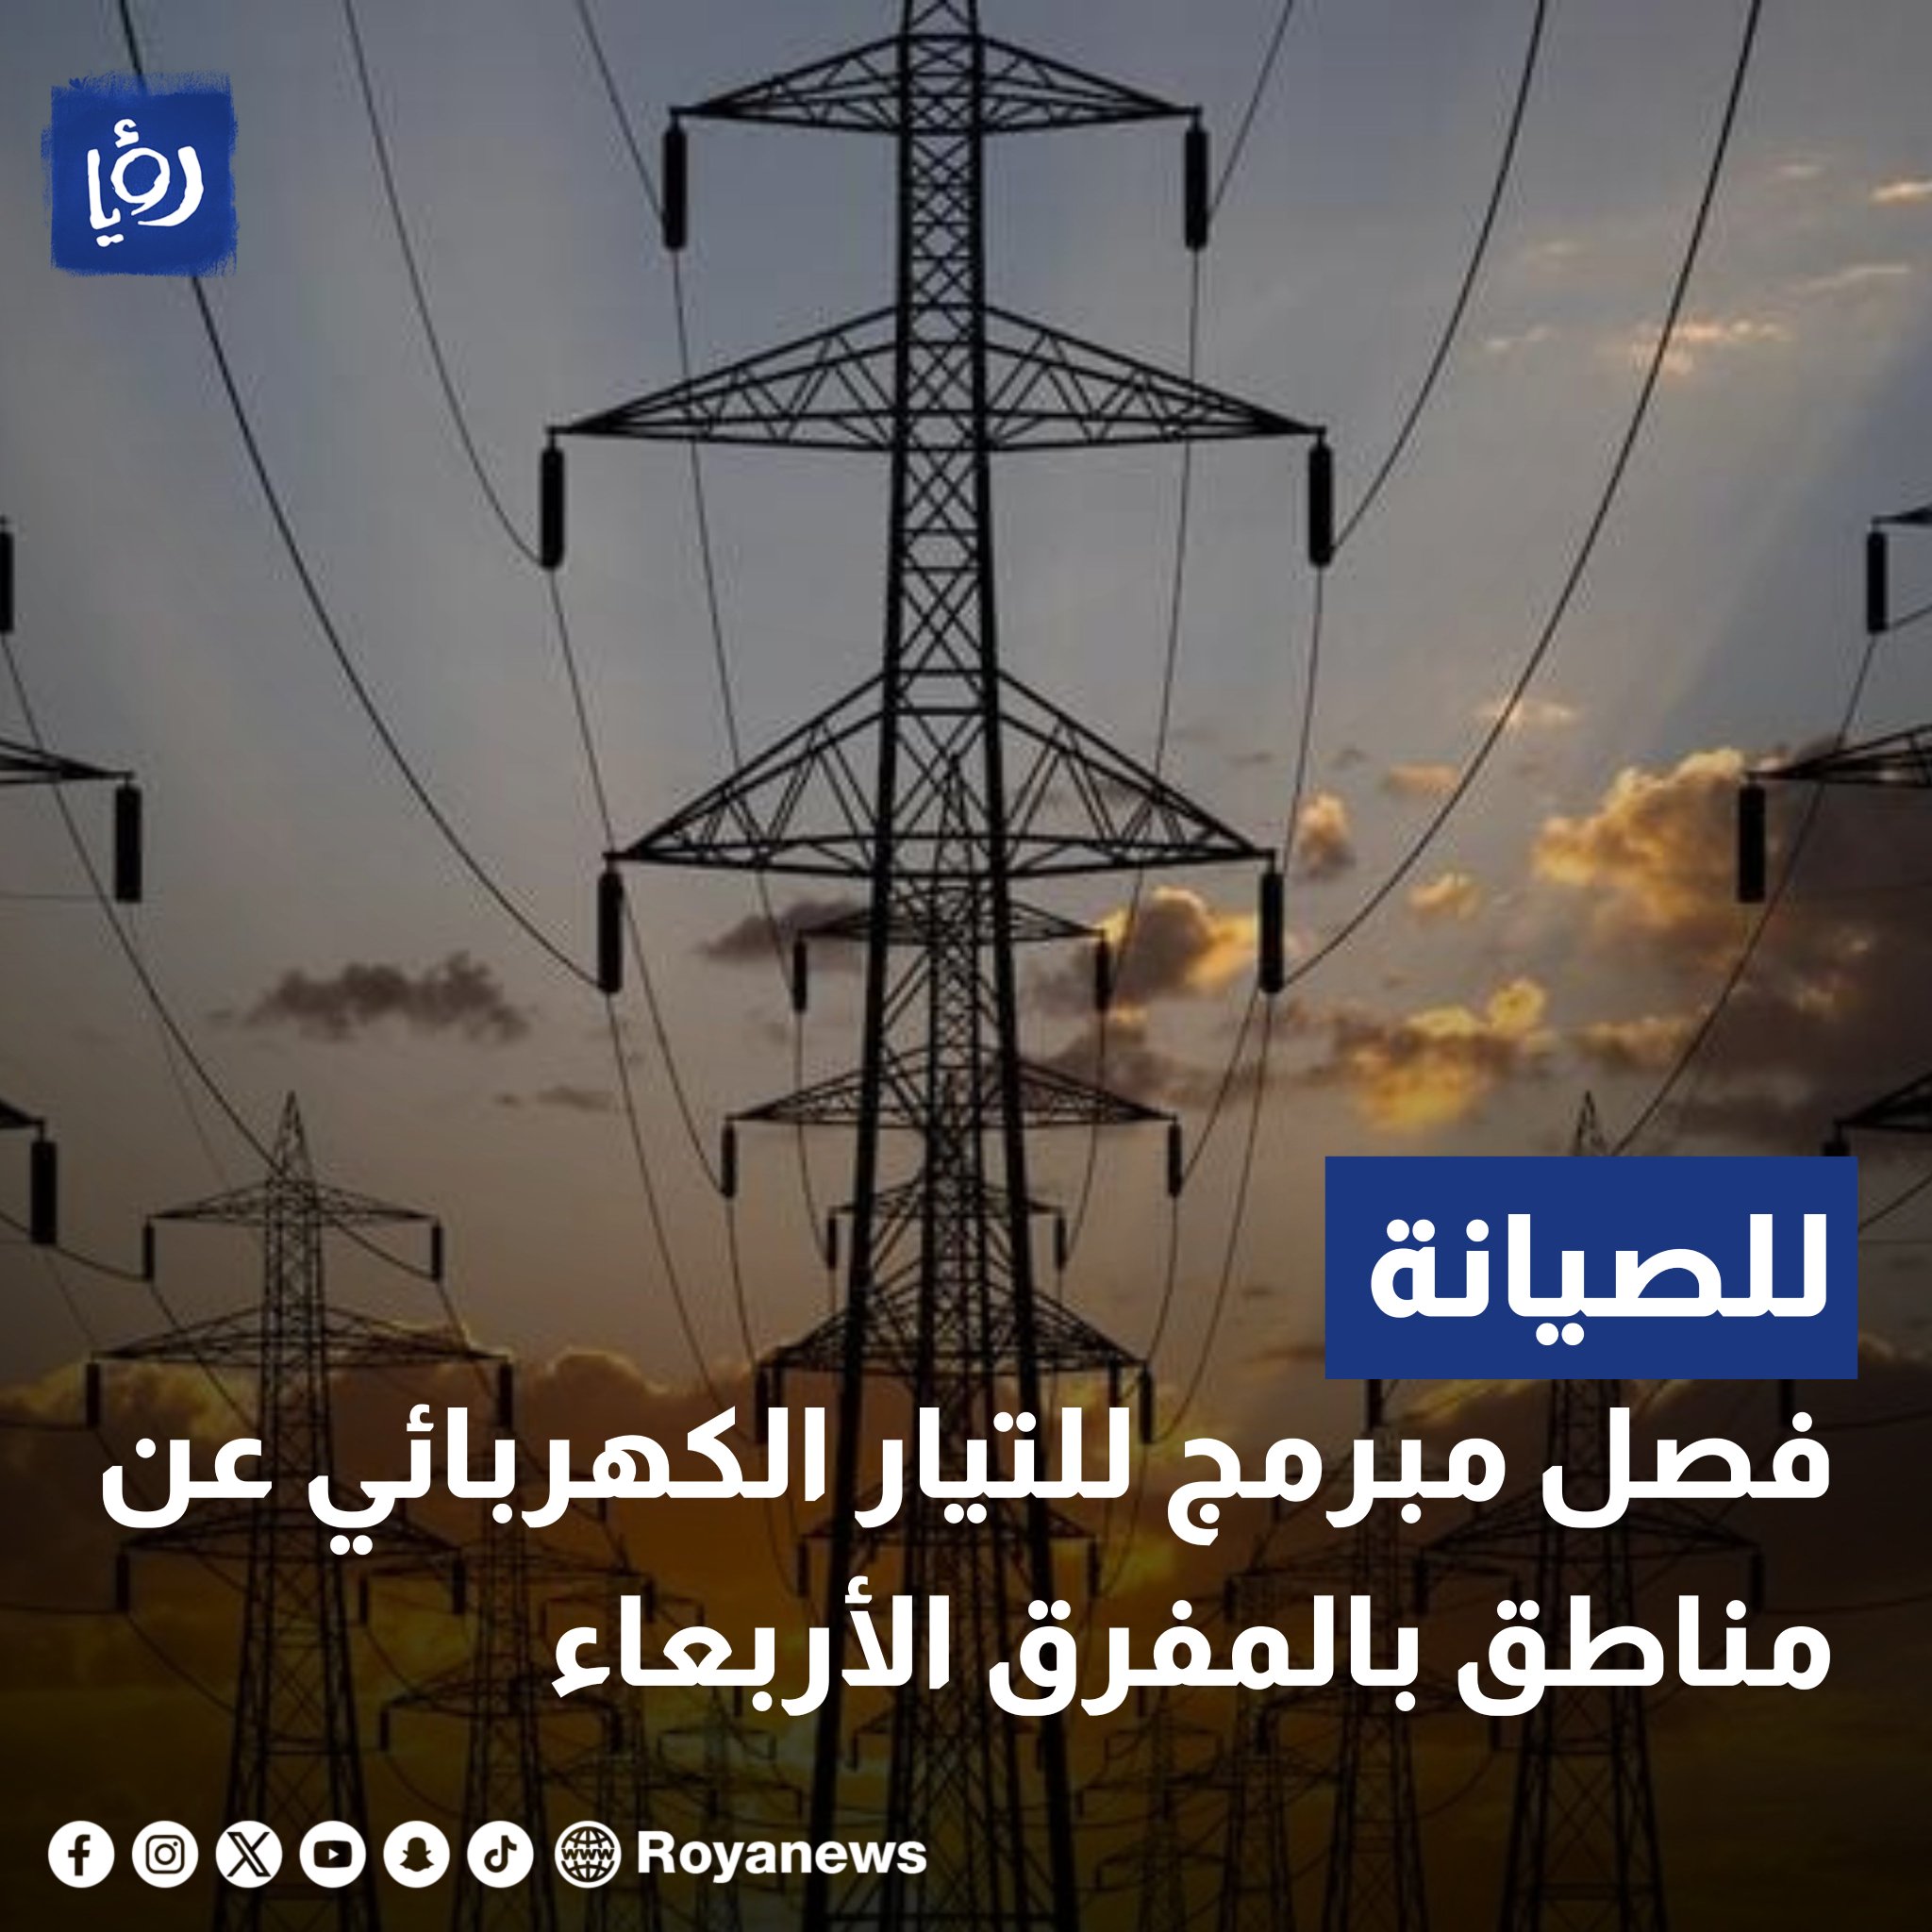 عاجل فصل الكهرباء عن مناطق في الأردن الأربعاء #عاجل 